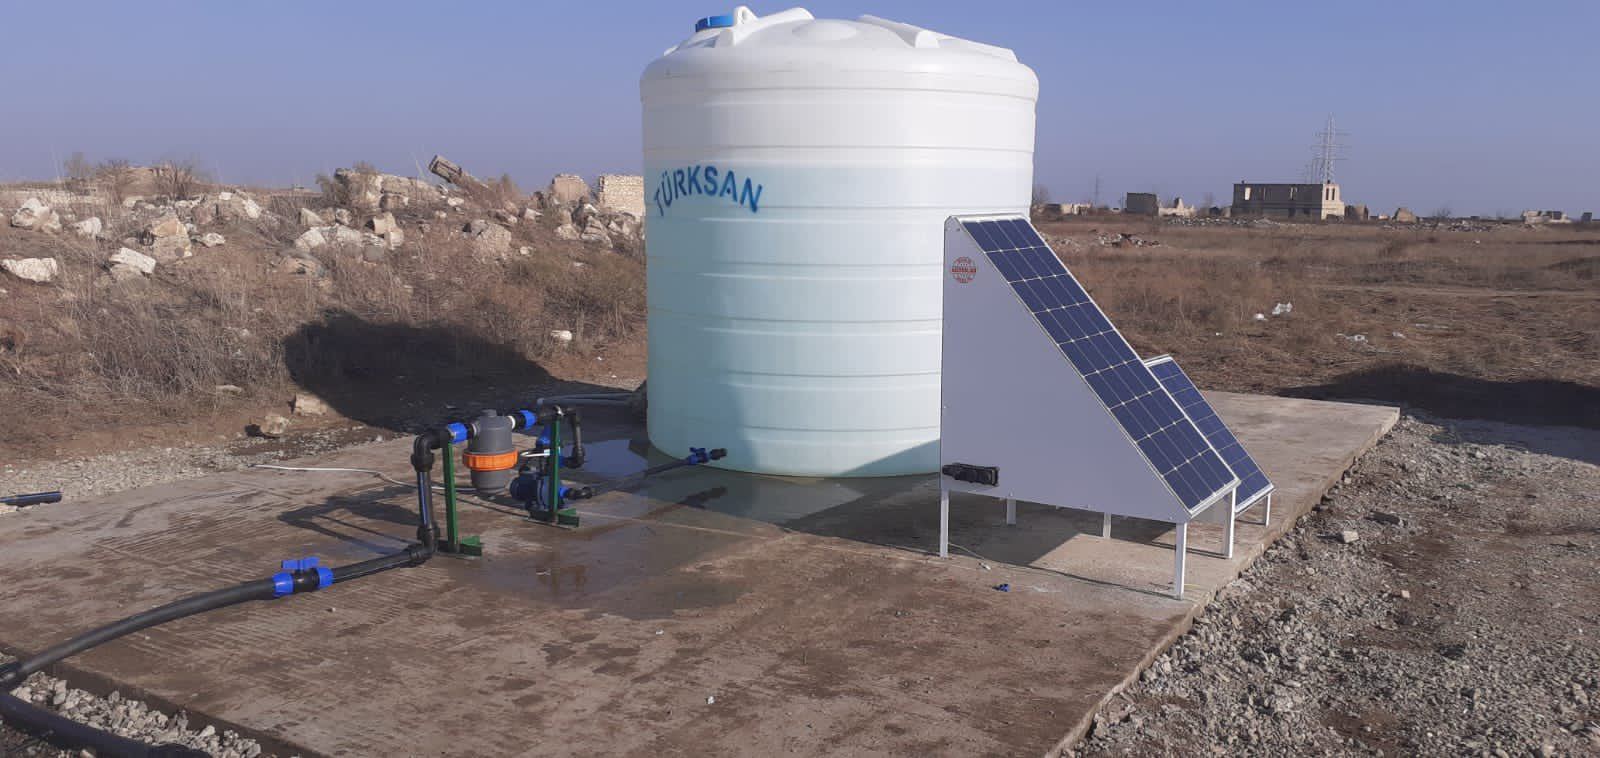 В Агдамском промышленном парке установлена система капельного орошения, работающая на солнечной энергии - Эмин Гусейнов (ФОТО)